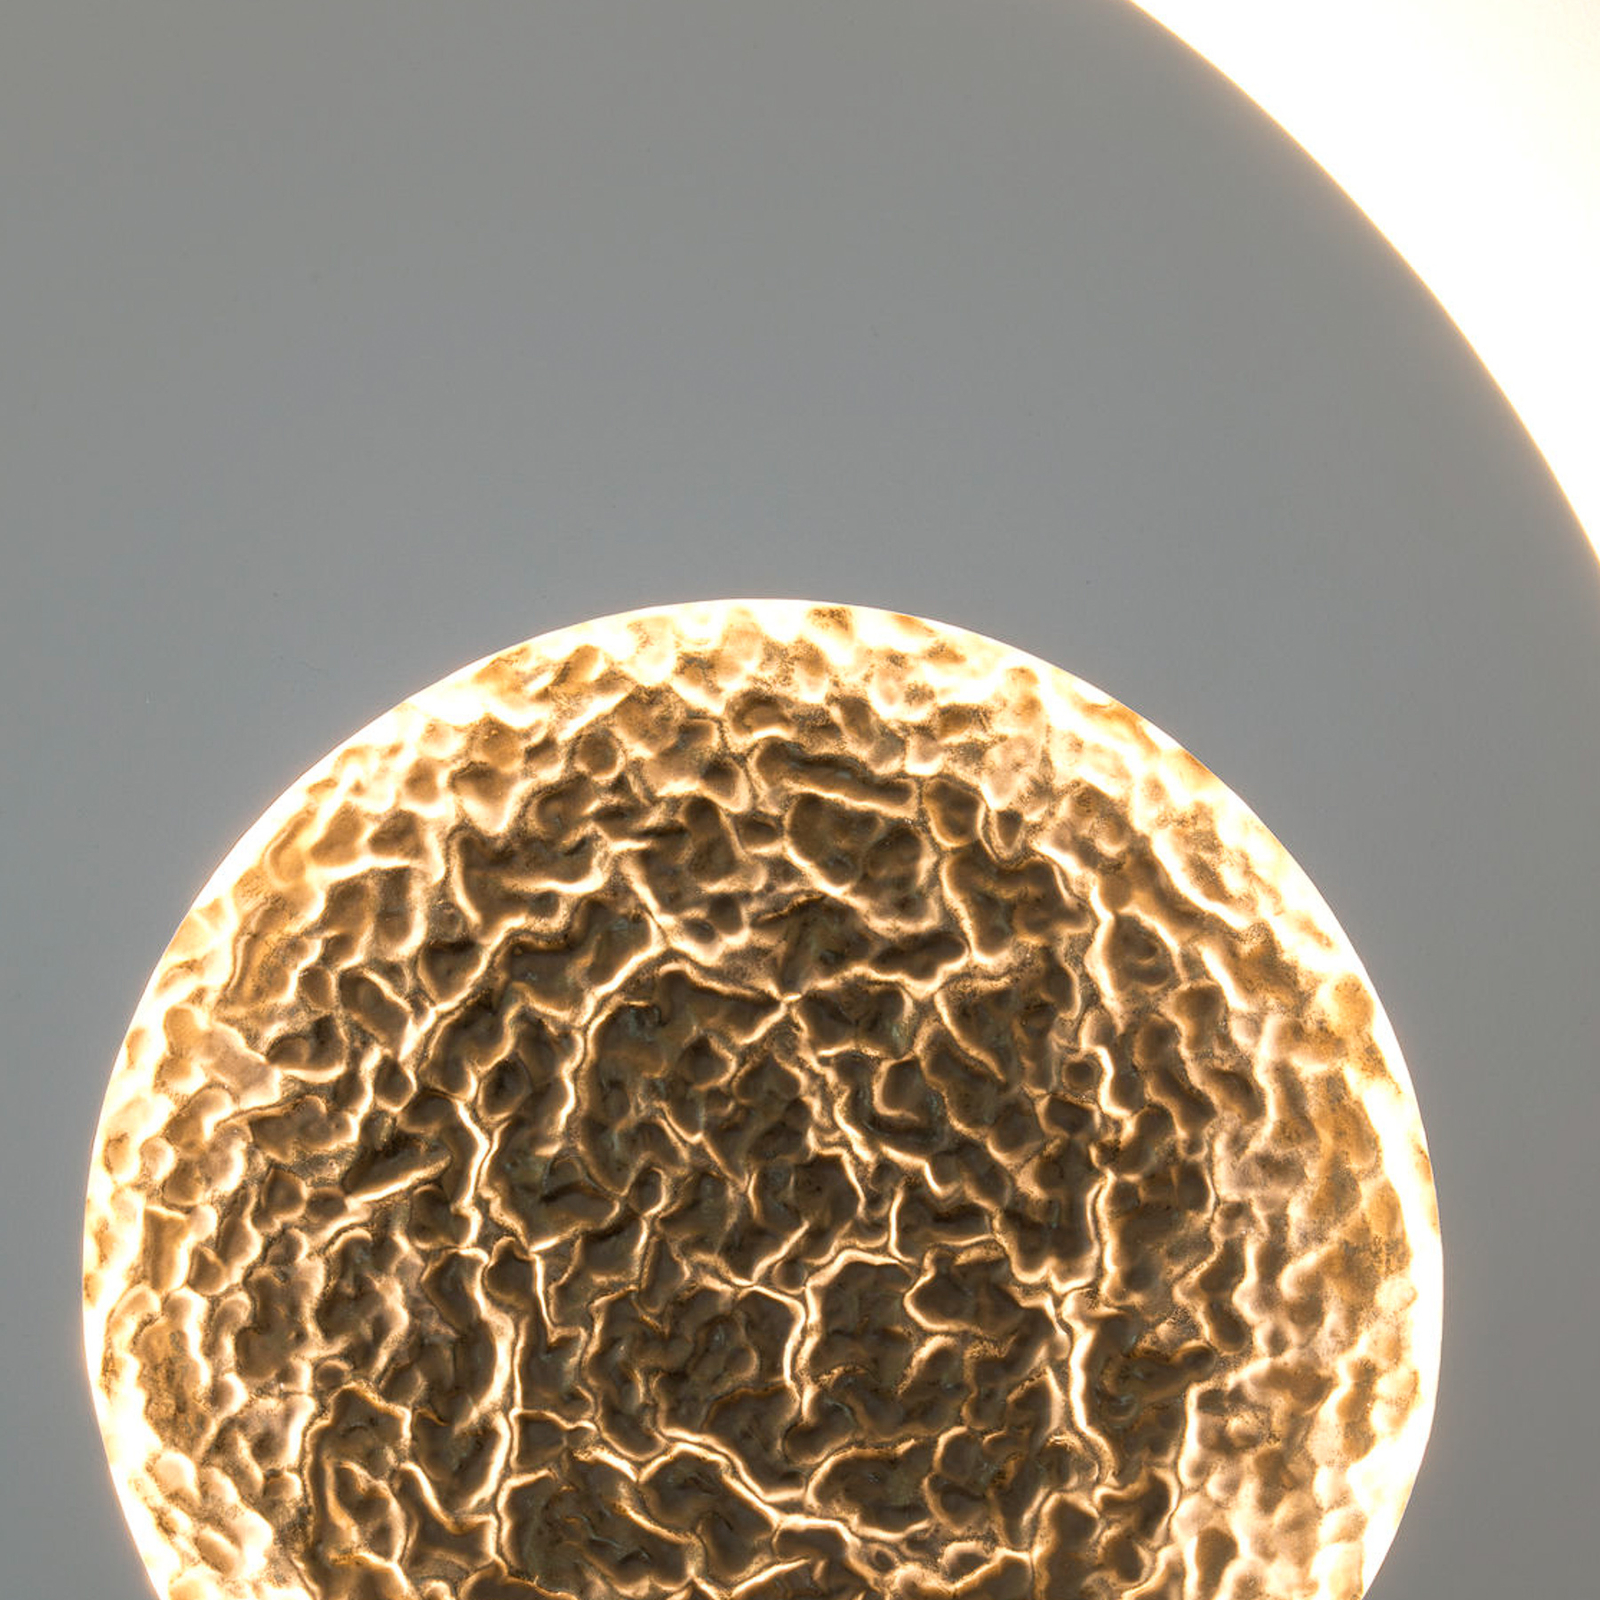 Nástěnné LED svítidlo Luna, šedá/zlatá barva, Ø 80 cm, železo